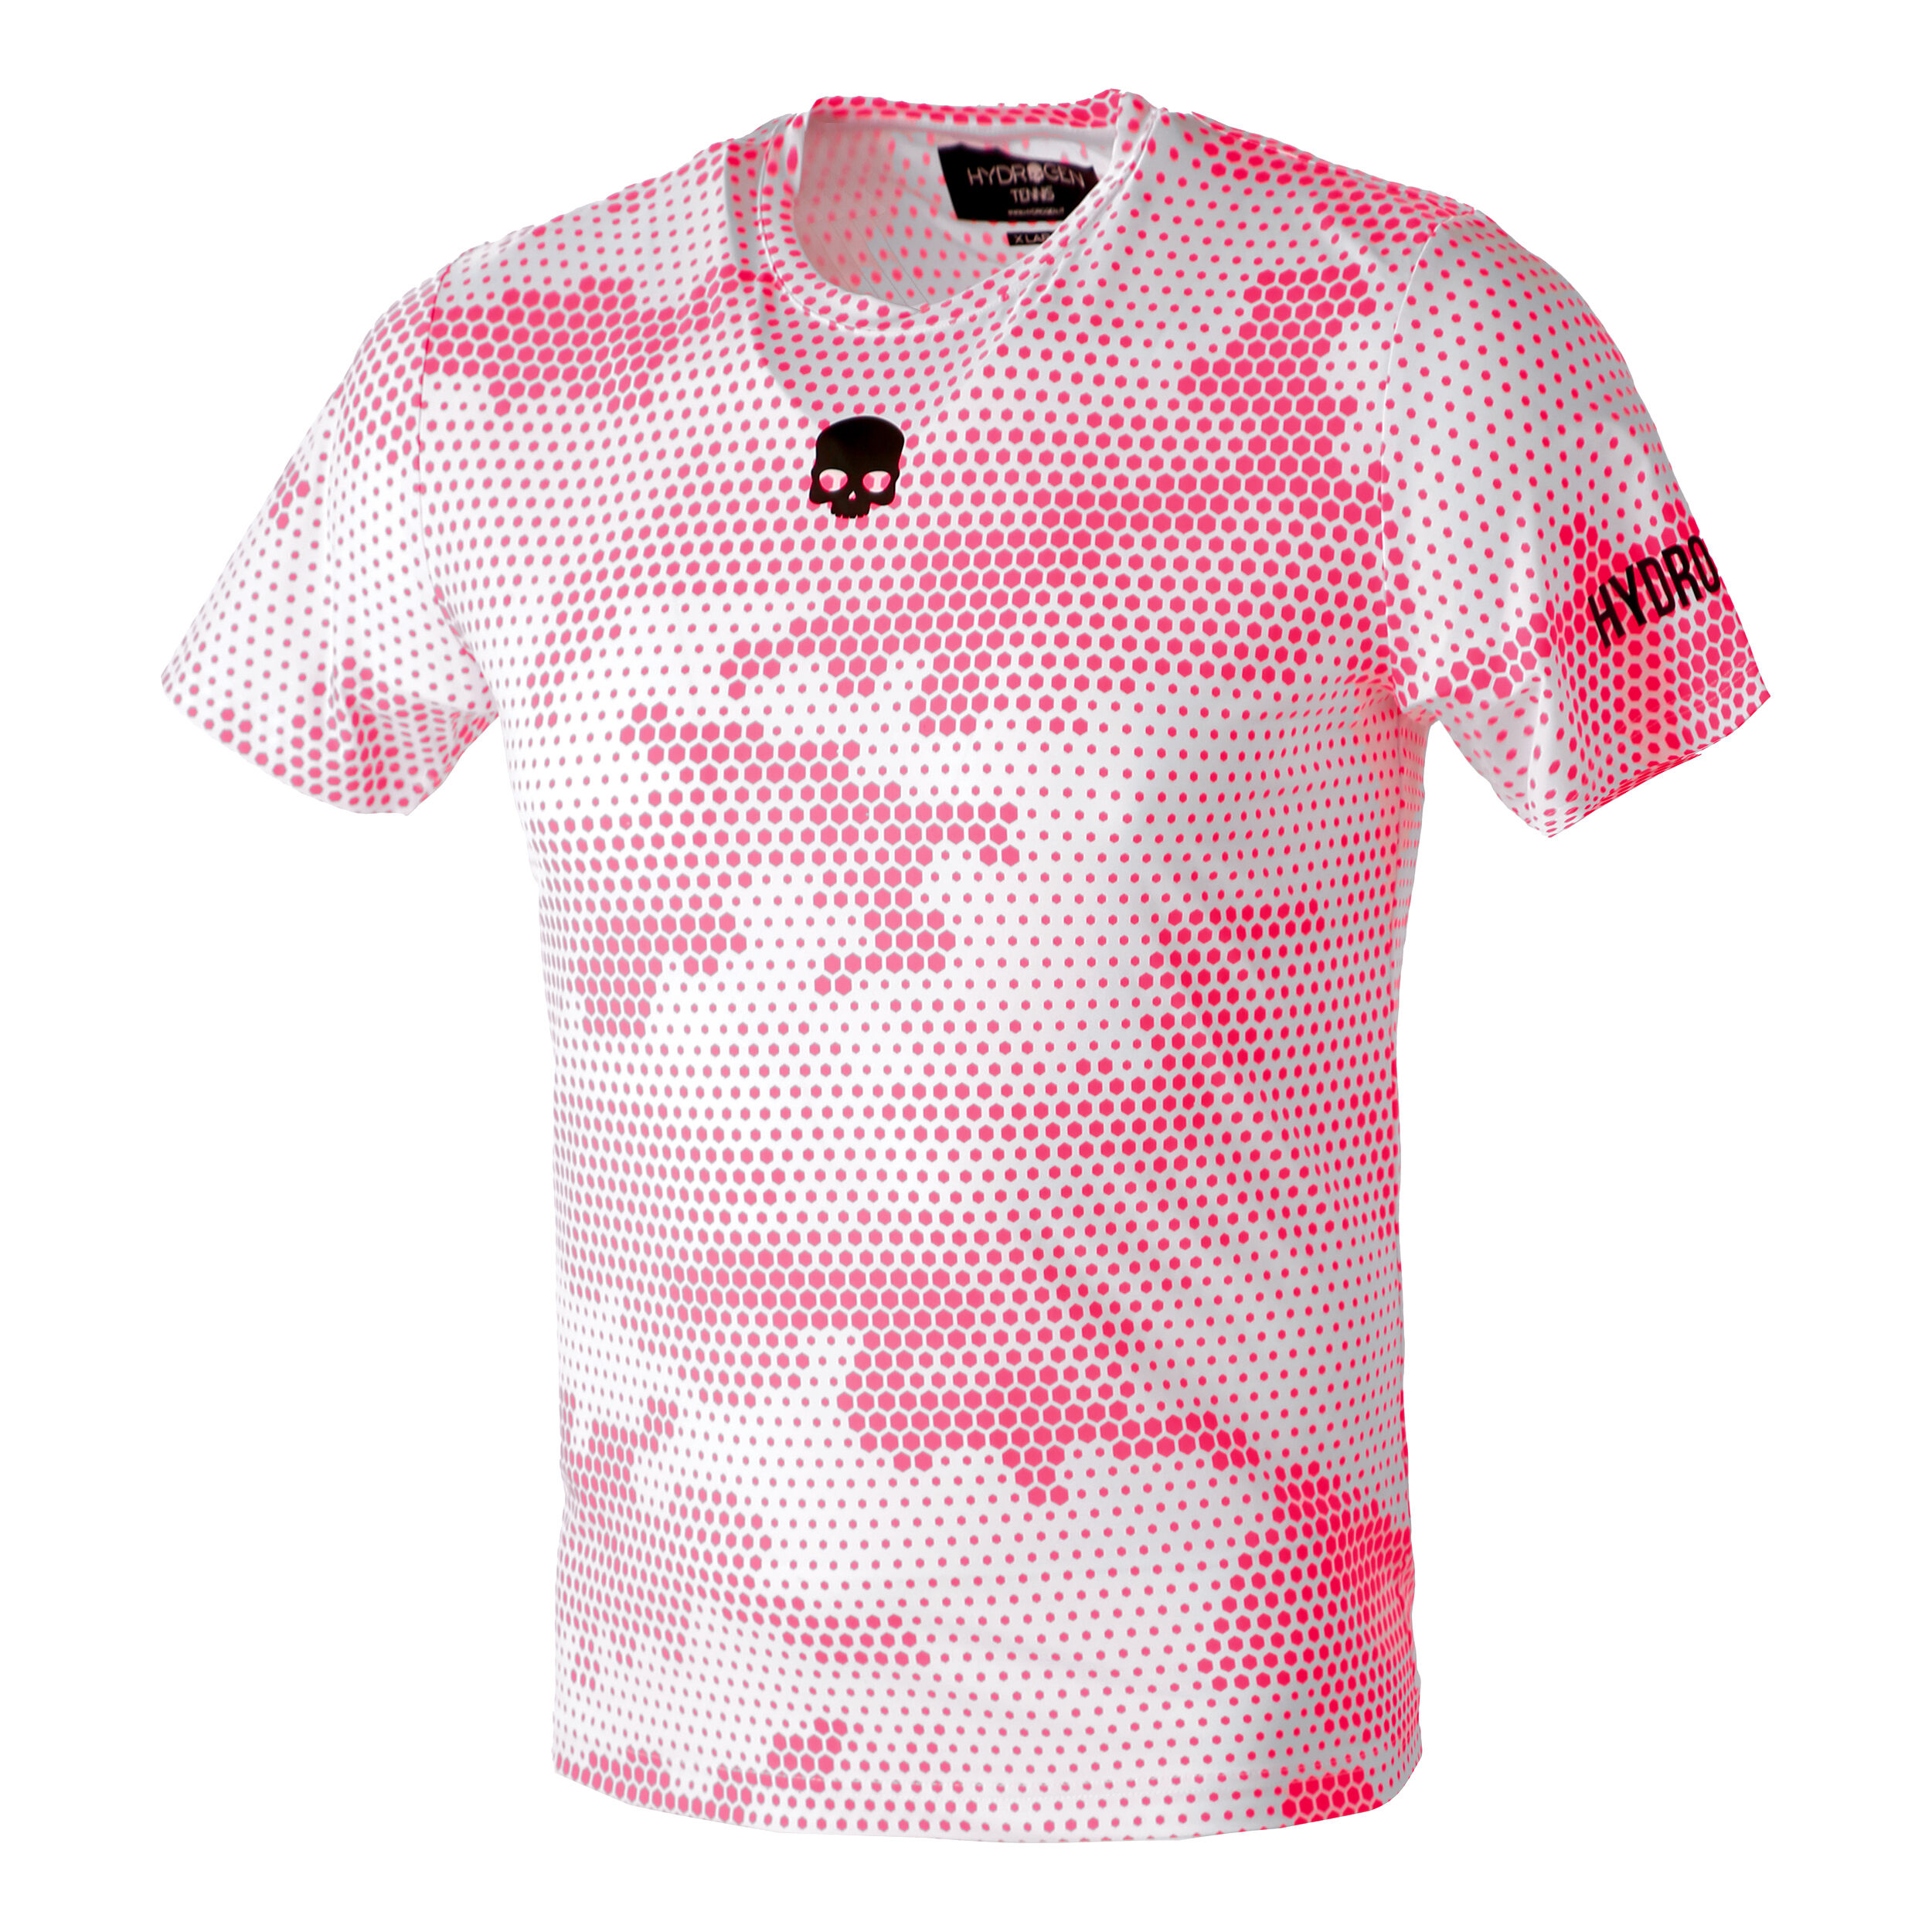 pink camo shirt mens